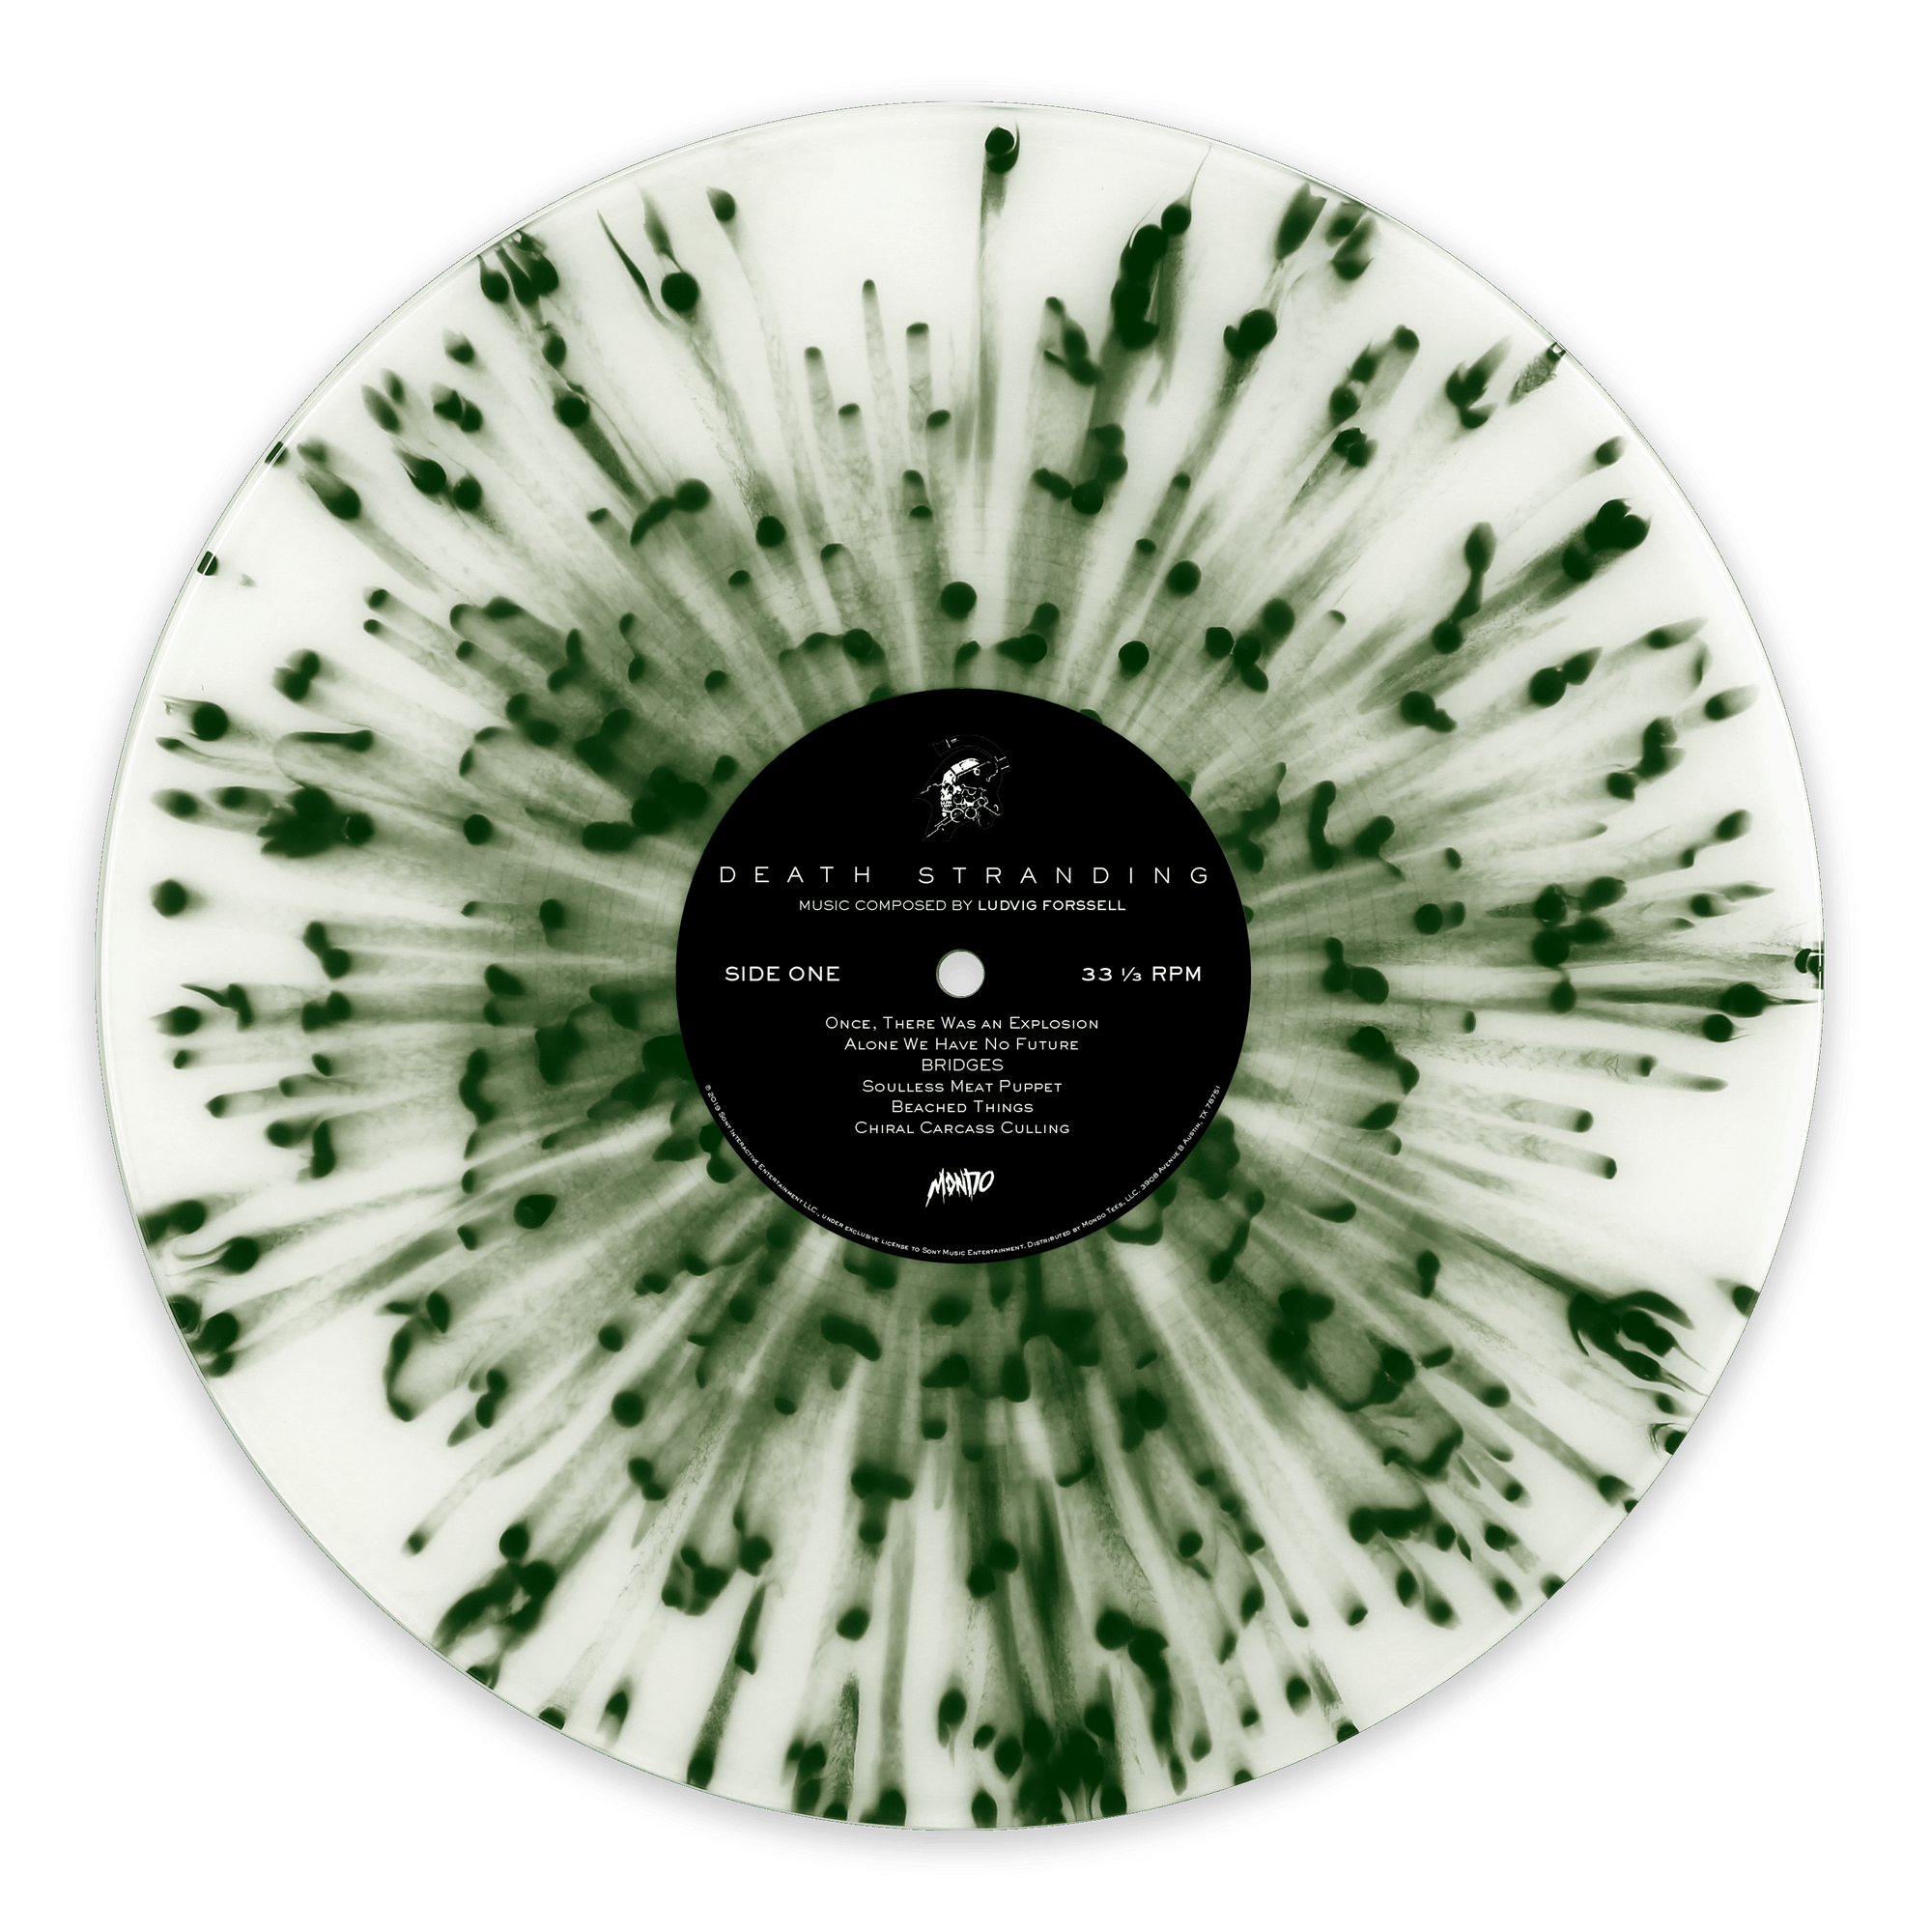 Oppenheimer Vinyl Soundtrack Score Unboxing From Mondo Records : r/vinyl